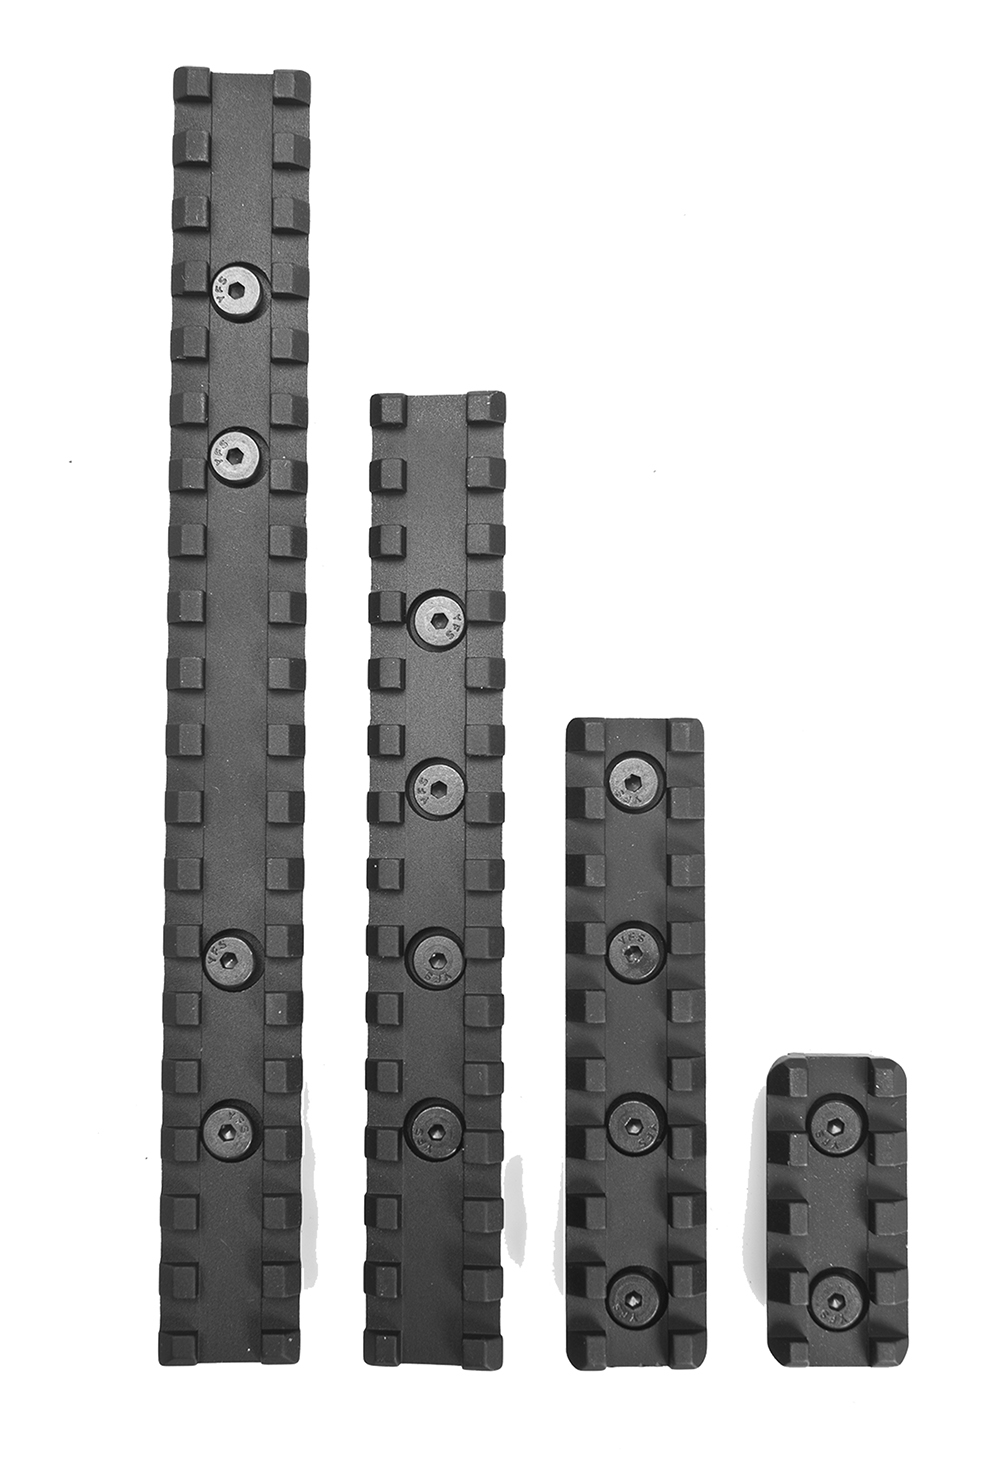 Samson Evolution Keymod Rail Kit 4 (1 Rail) 6061-T